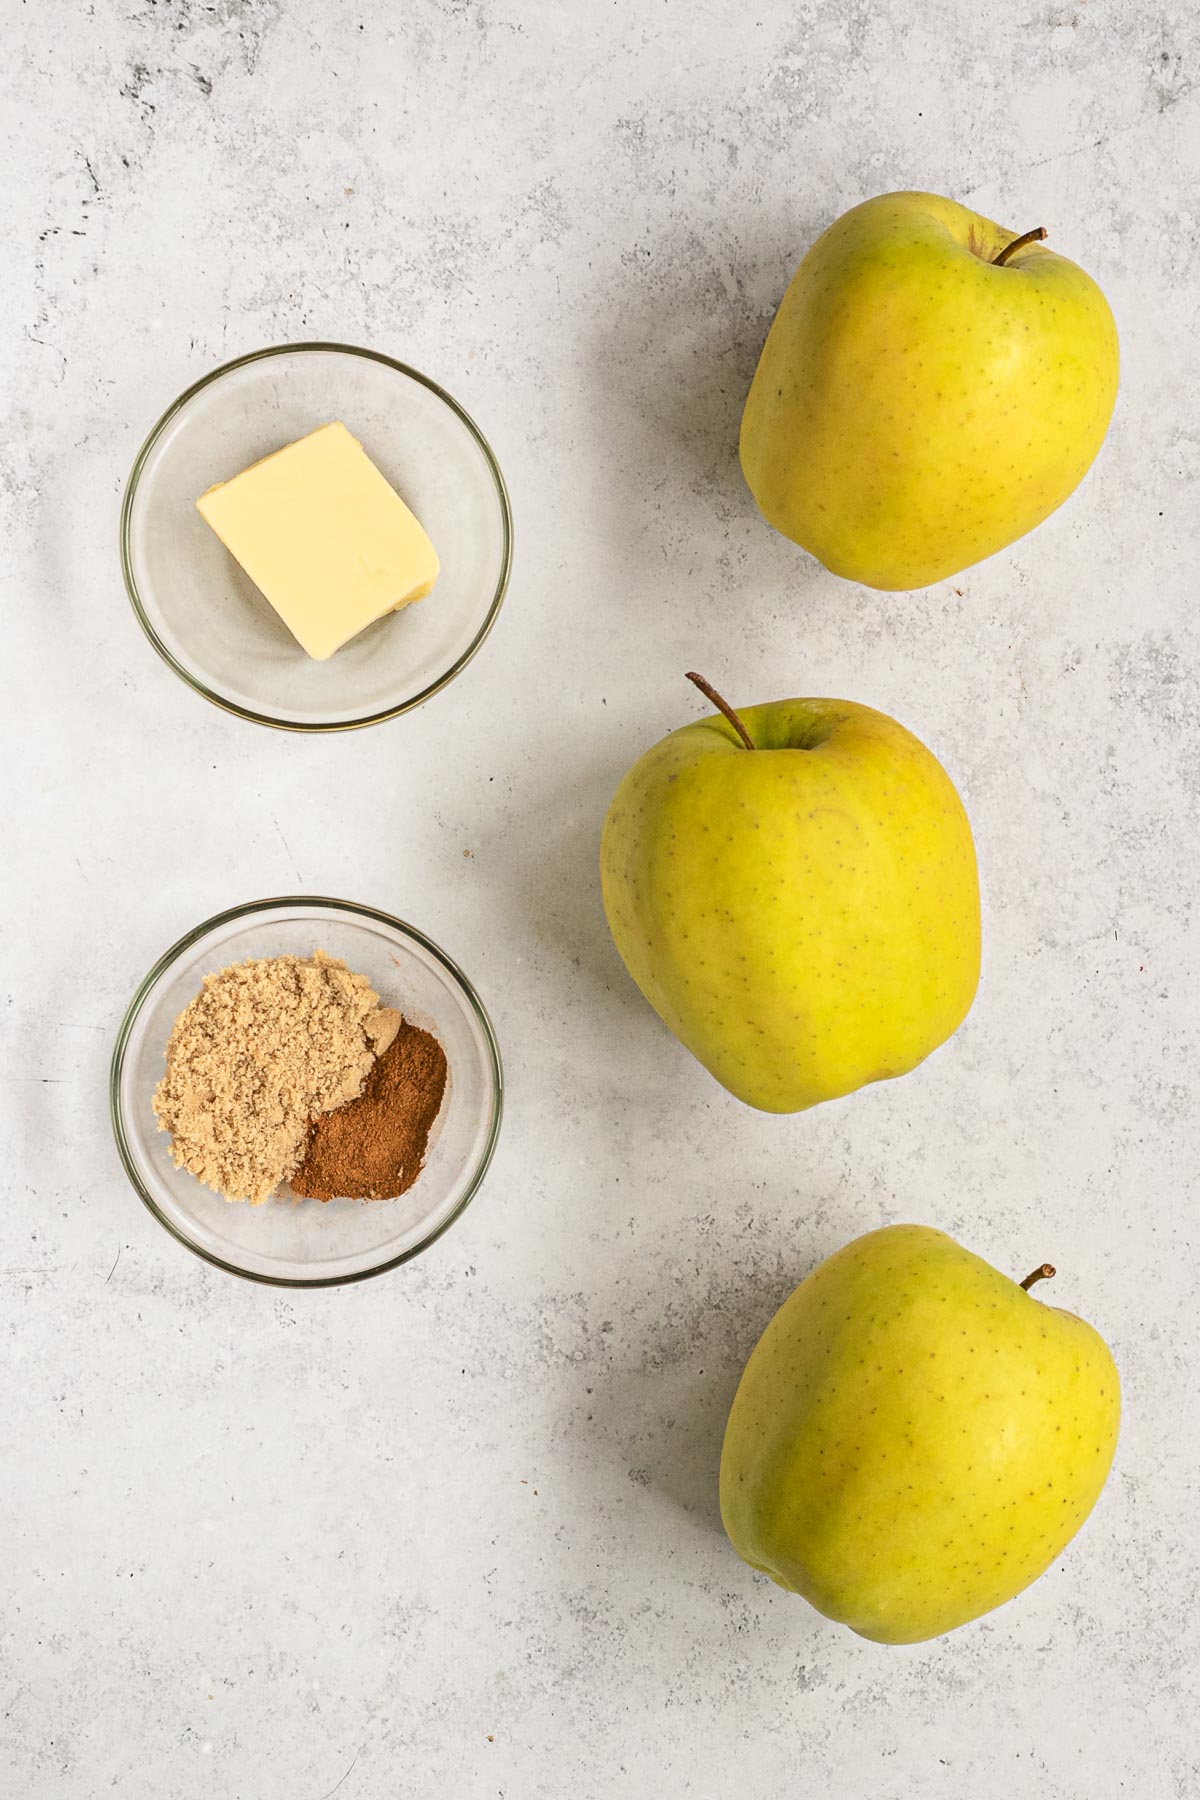 Healthy Cinnamon Baked Apples ingredients